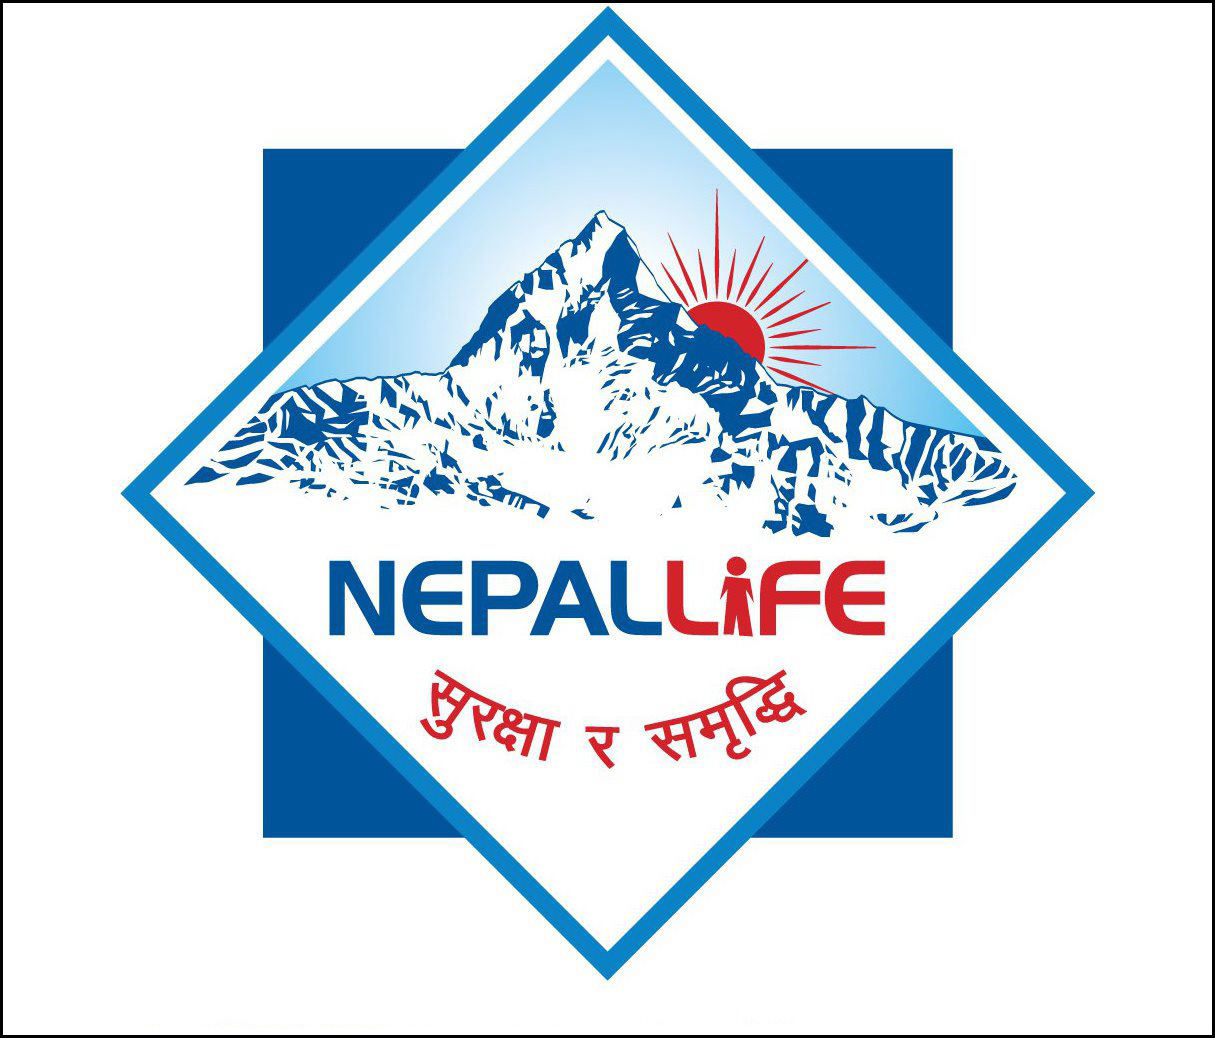 नेपाल लाइफ इन्स्योरेन्सको नाफामा उल्लेख्य वृद्धि, बीमा शुल्क संकलनसँगै दाबी भुक्तानी बढ्यो